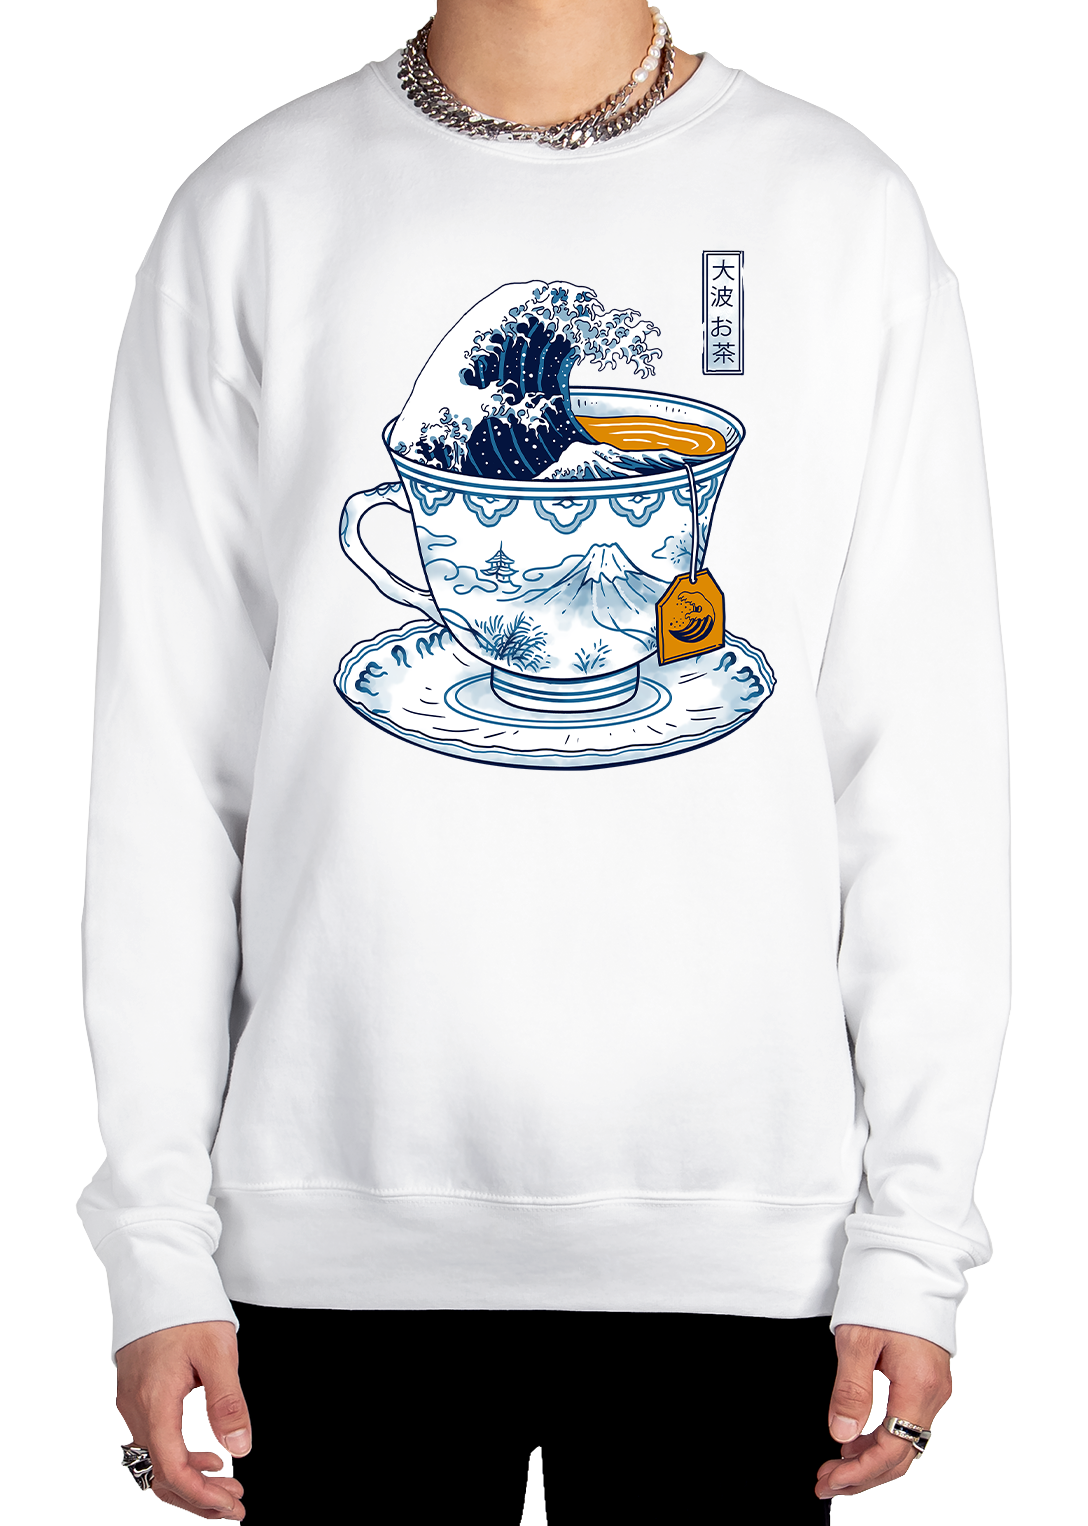 Cup Of Kanagawa Sweatshirt